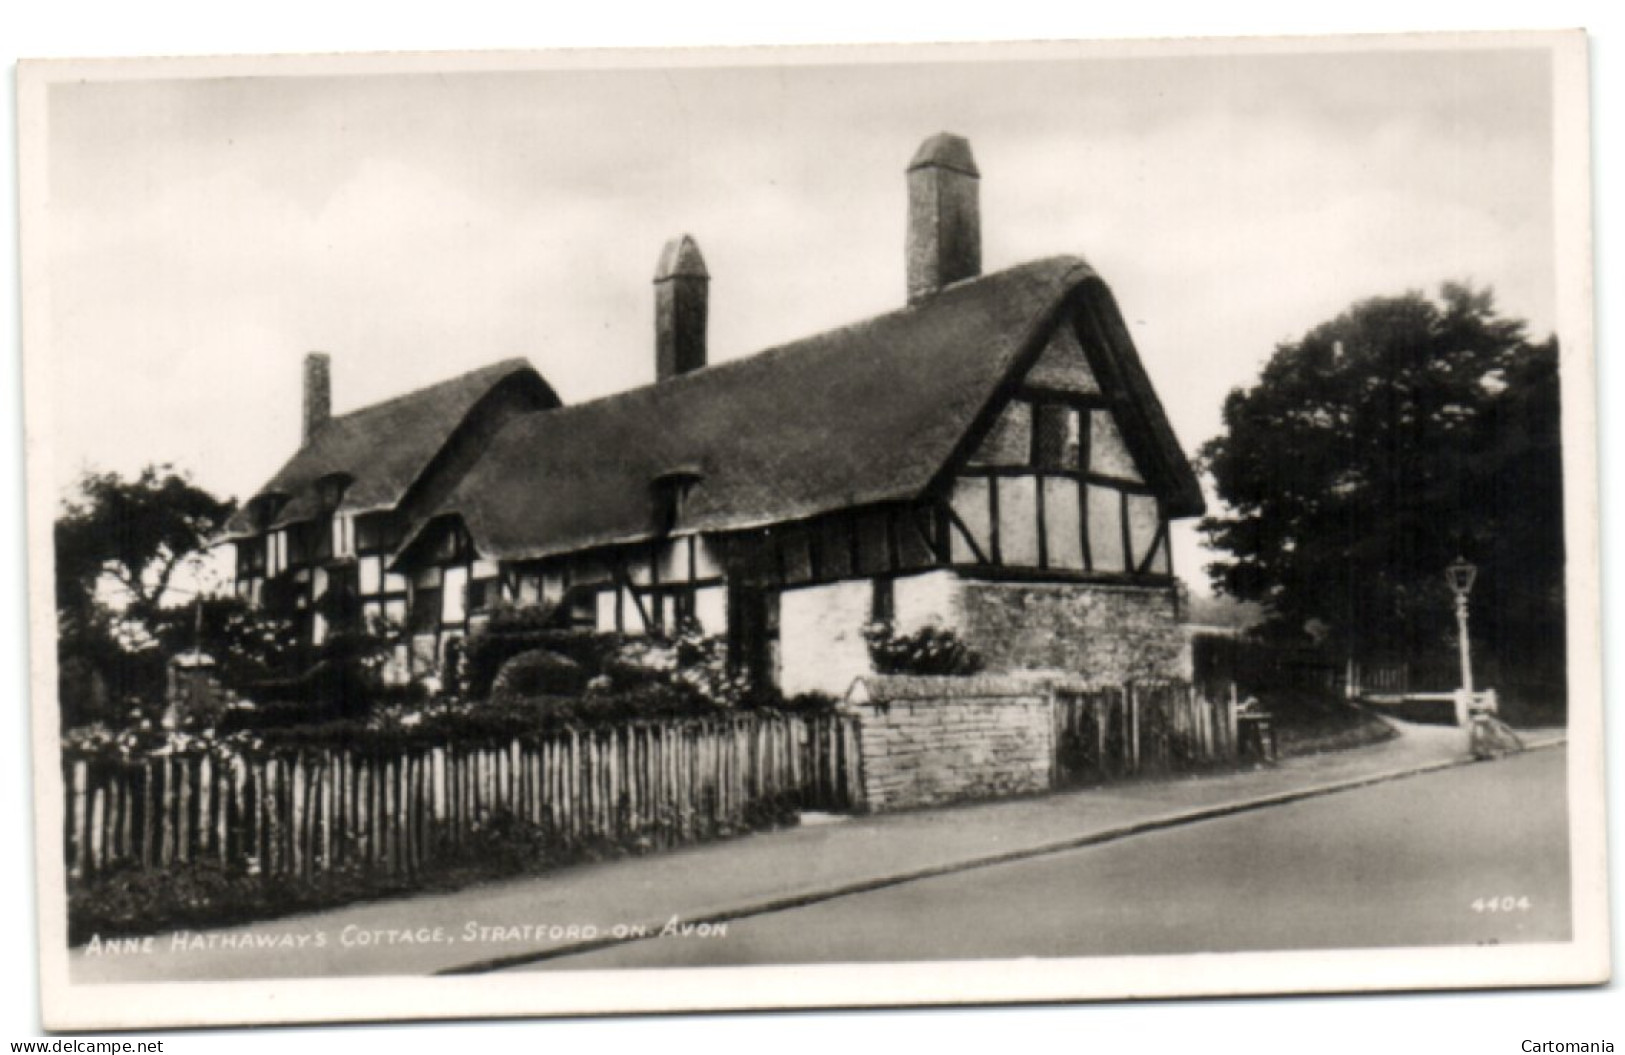 Anne Hathaways Cottage - Stratford-on-Avon - Stratford Upon Avon